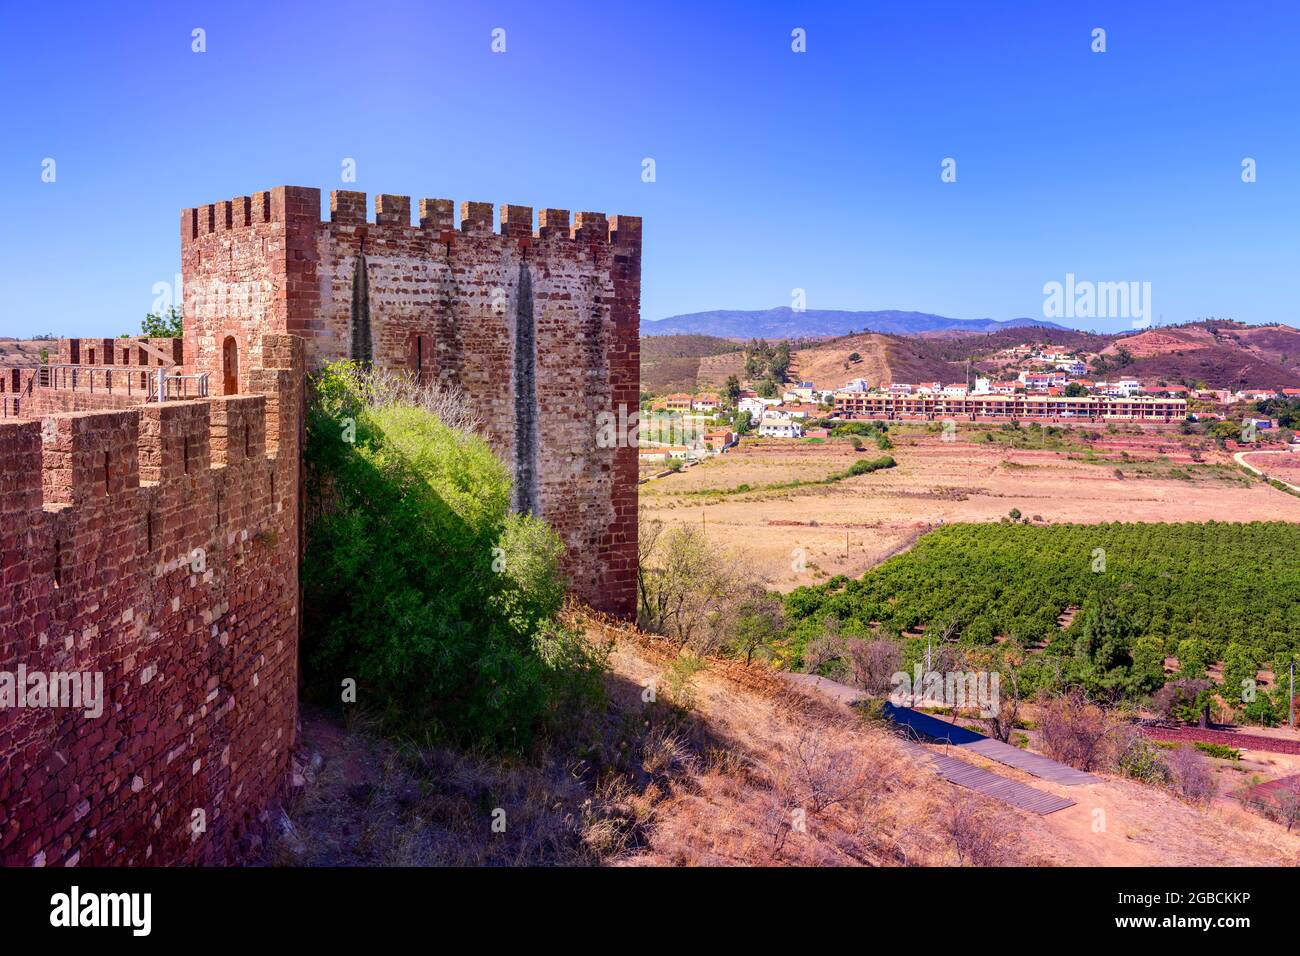 Torre cuadrada y almenas del castillo de Silves situado contra las colinas circundantes, el campo y el cielo azul. Silves Algarve Portugal Foto de stock